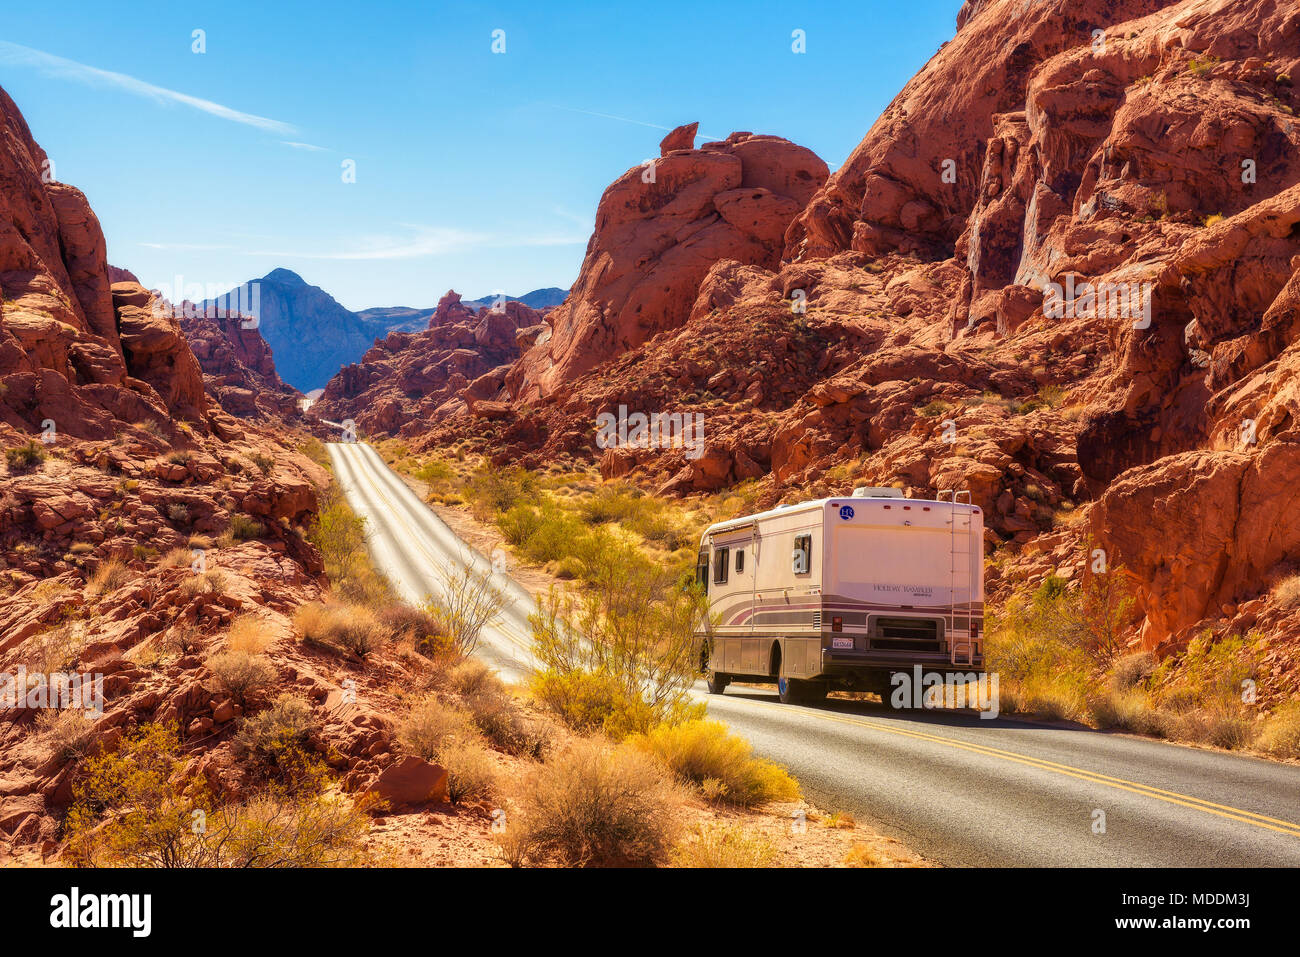 Camping trailer voyageant sur la route dans la Vallée de Feu Photo Stock -  Alamy